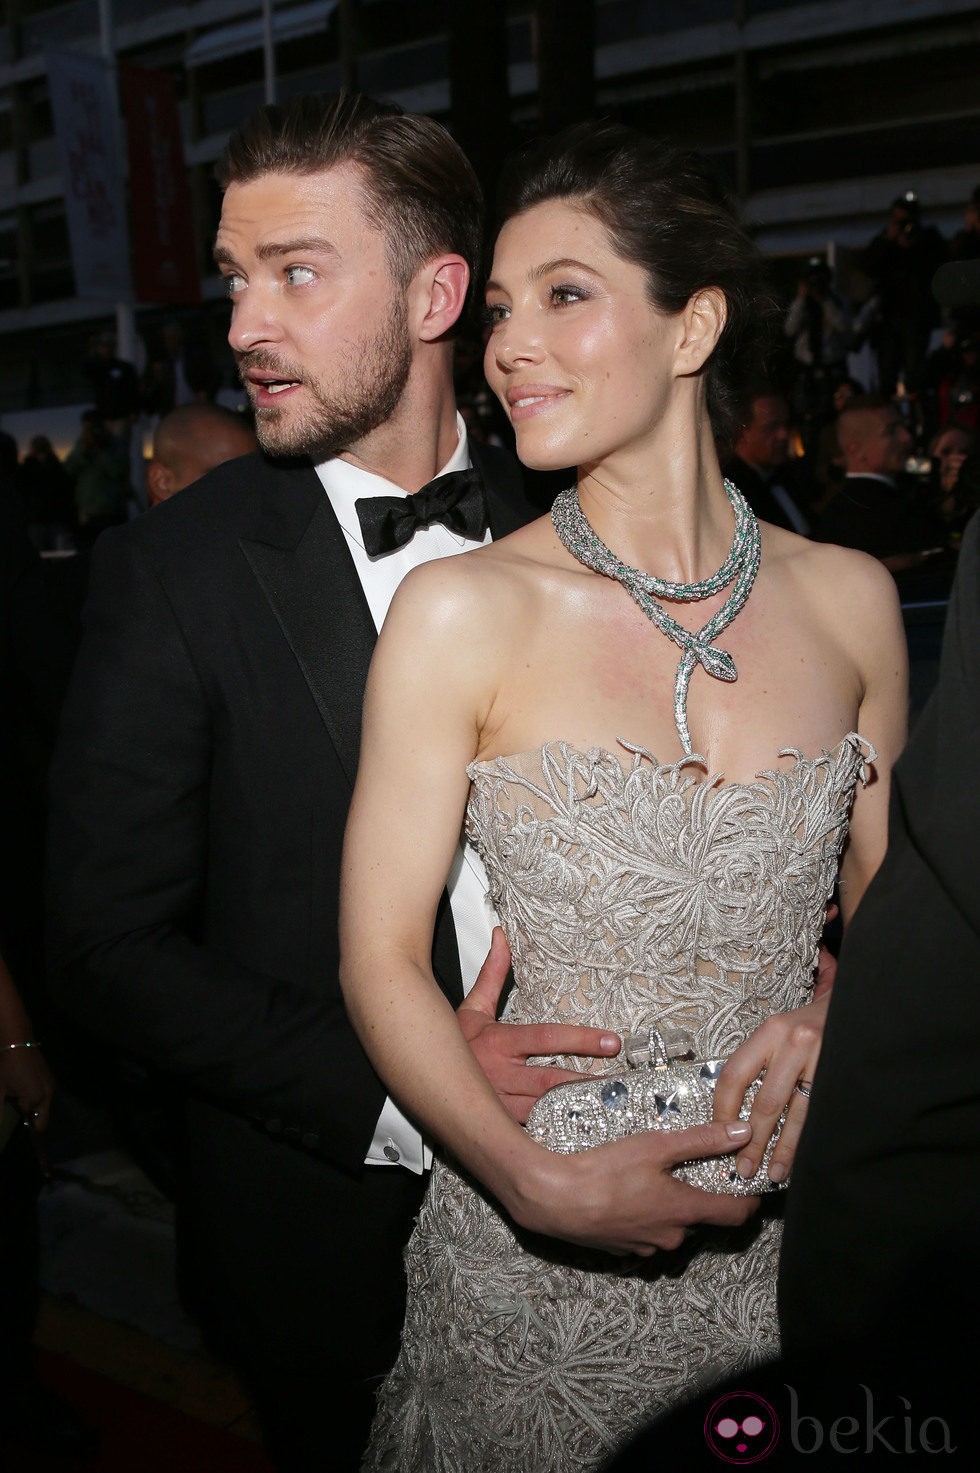 Justin Timberlake y Jessica Biel en el festival de cine de Cannes 2014